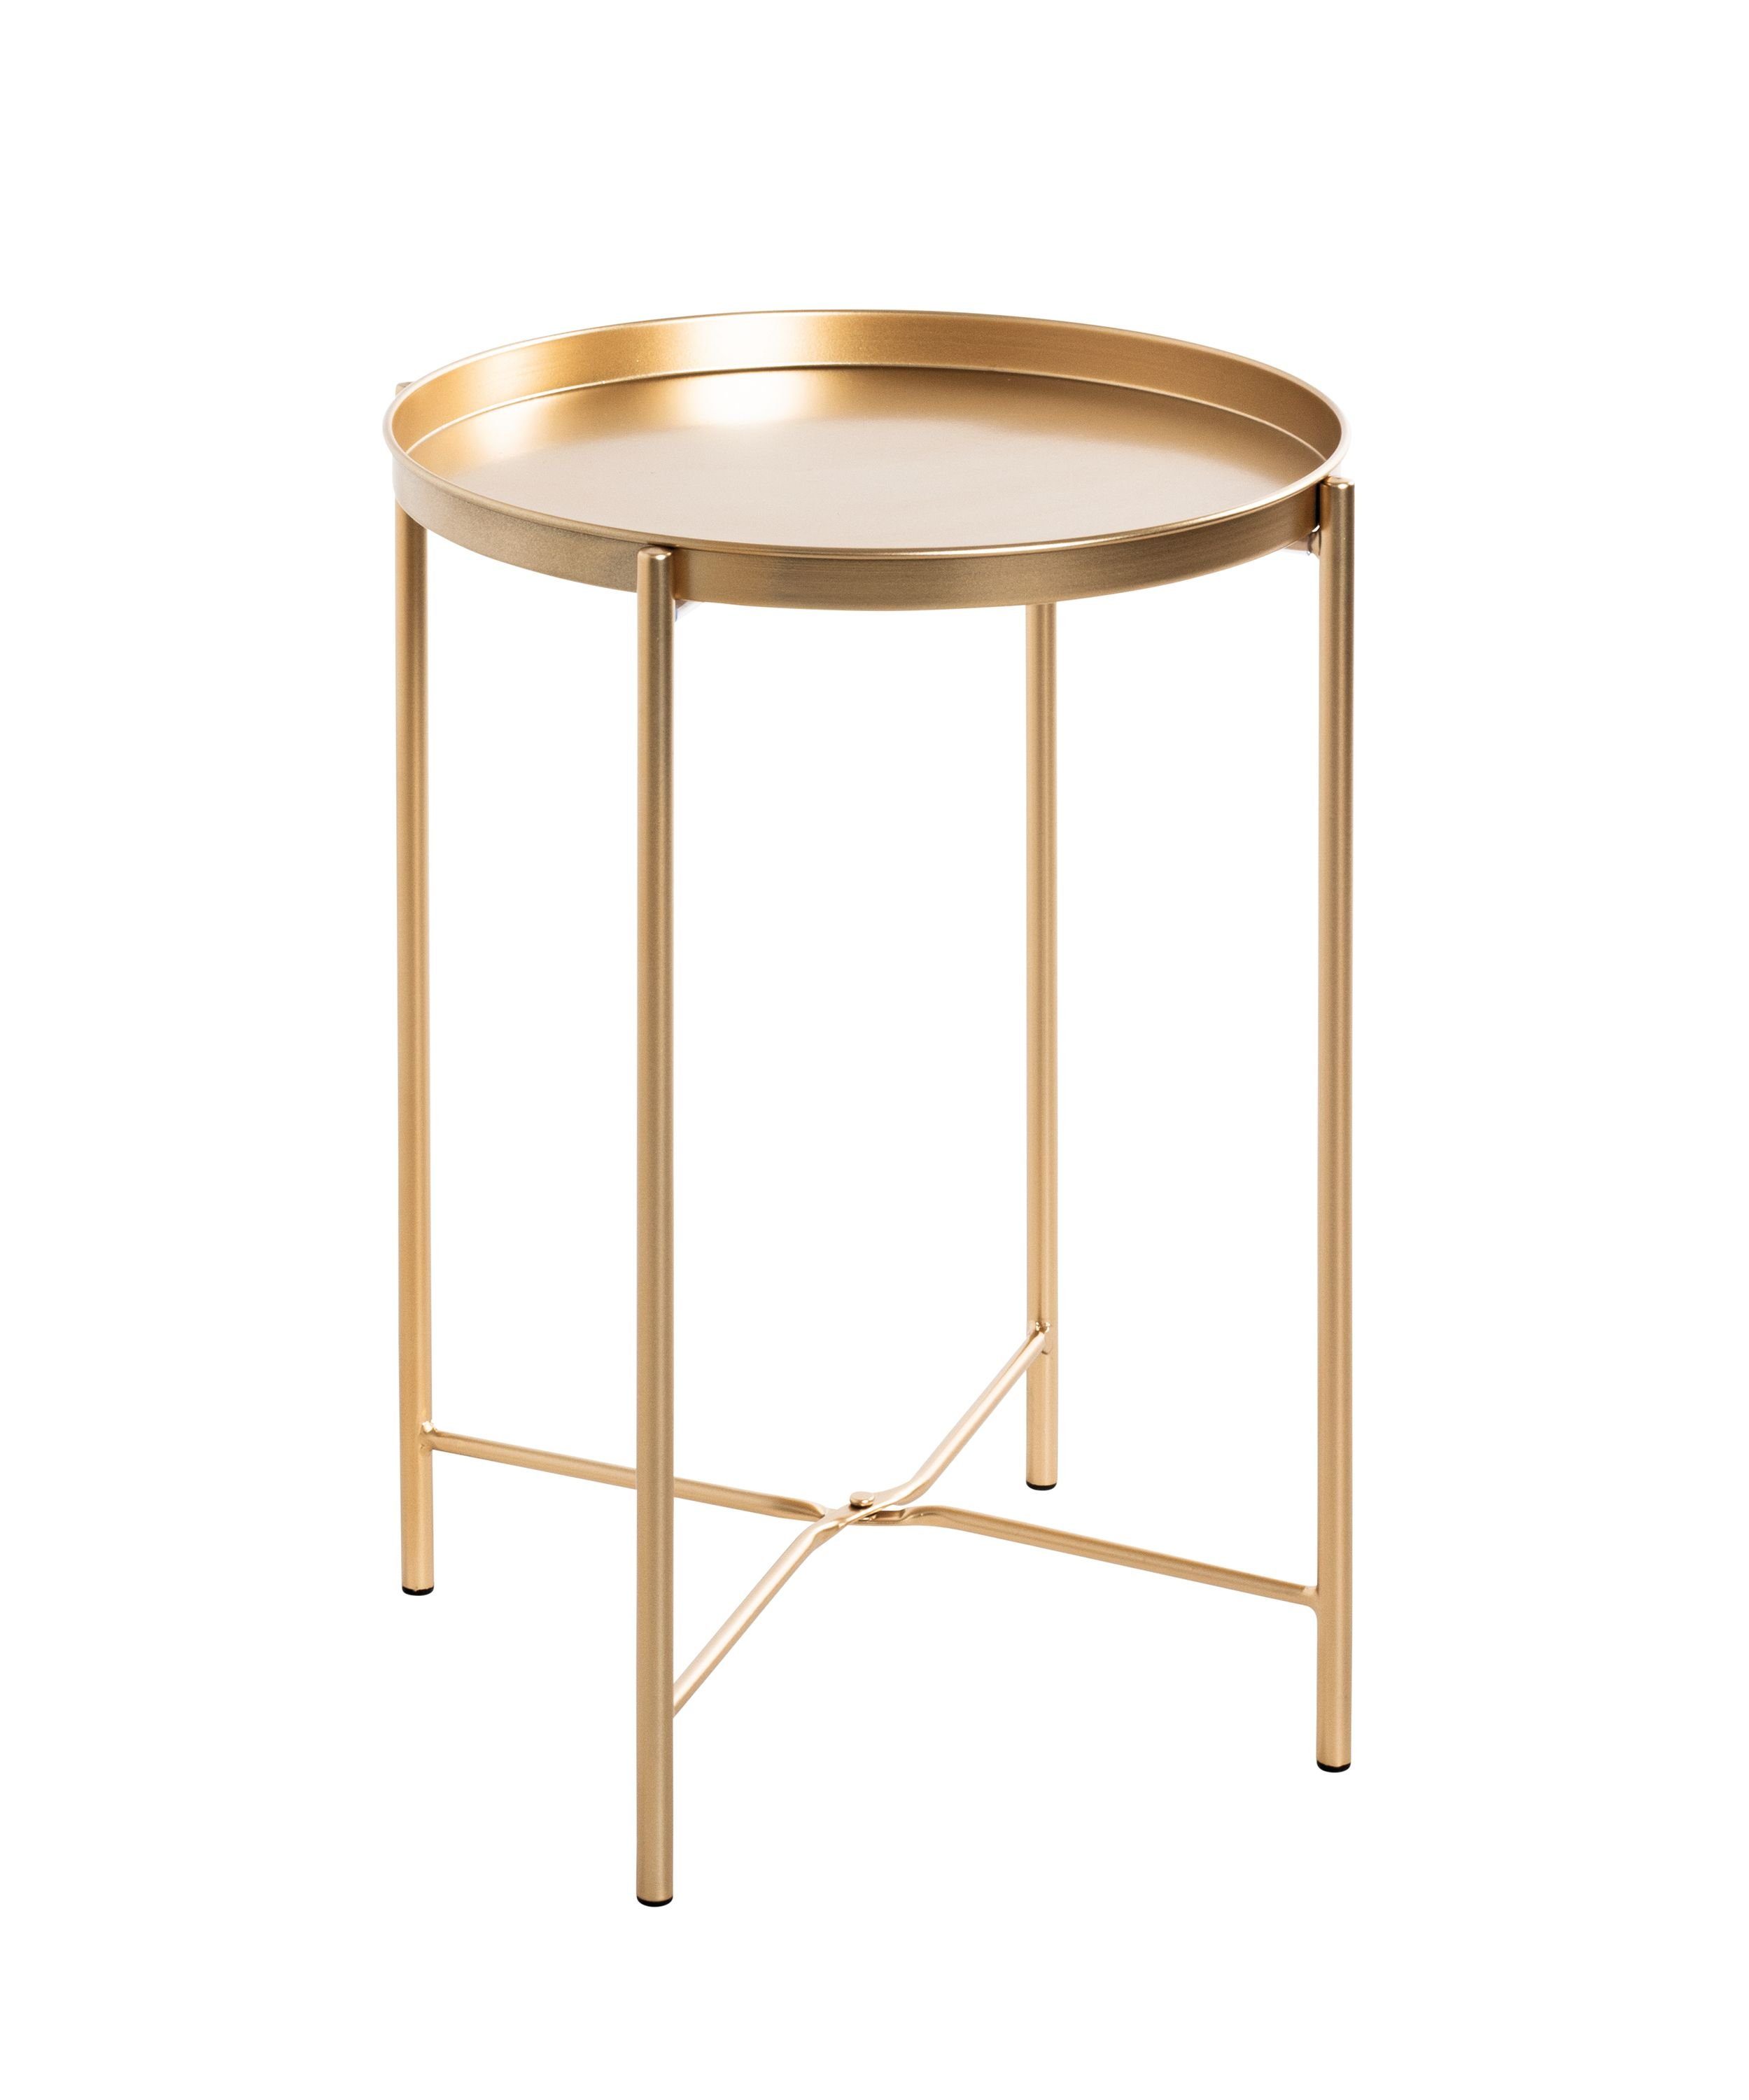 HAKU Beistelltisch Beistelltisch, HAKU Möbel Beistelltisch (DH 39x50 cm) DH 39x50 cm gold Kaffeetisch